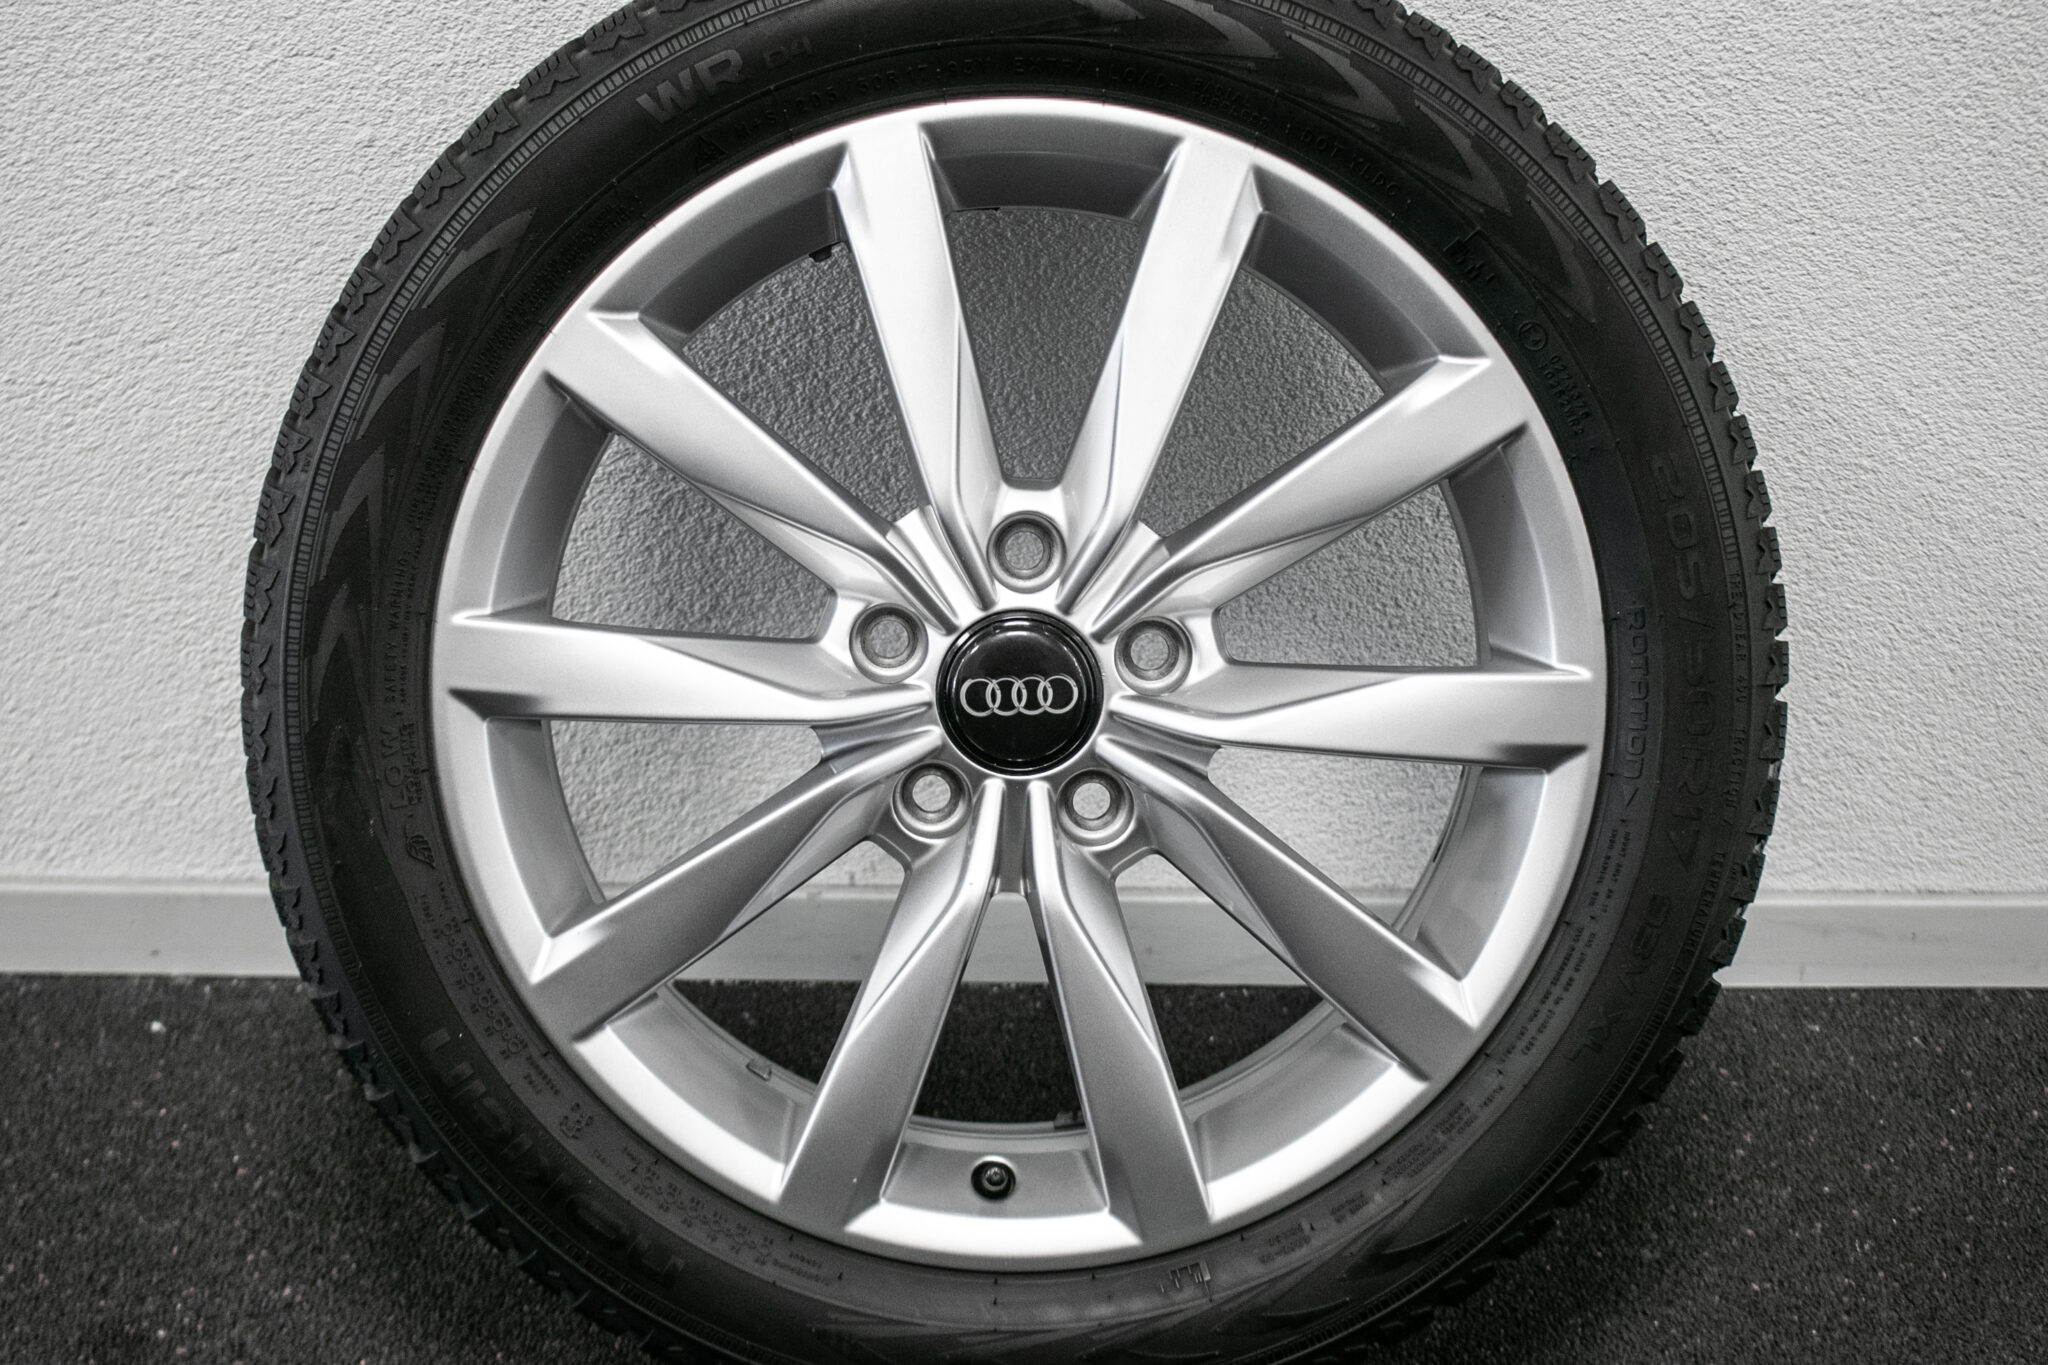 17" Winterwielen voor o.a. Audi A3
€399,-
Gebruikt.
Profieldiepte: 6mm - 6.5mm